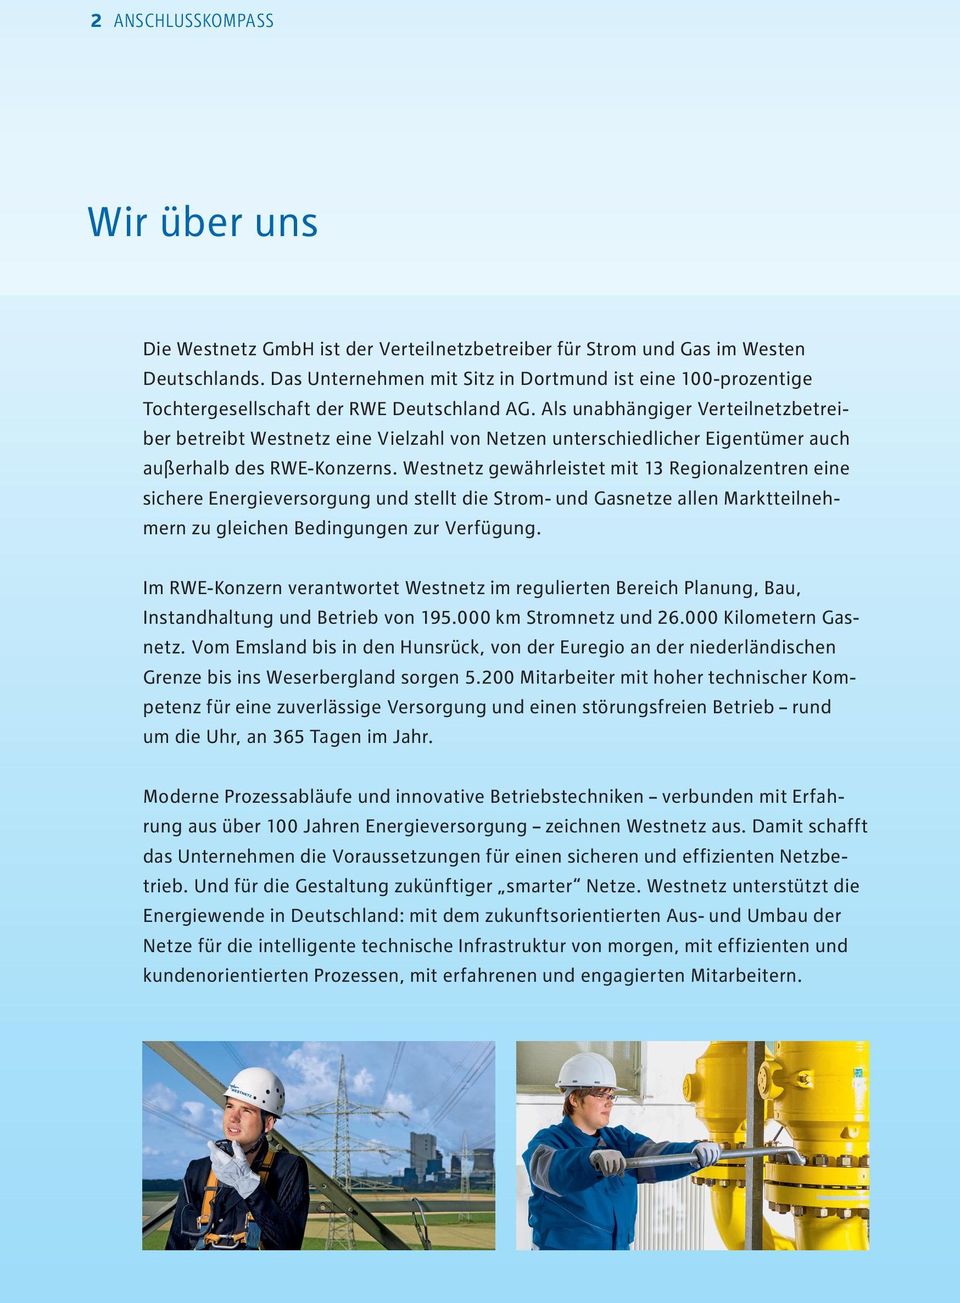 Als unabhängiger Verteilnetzbetreiber betreibt Westnetz eine Vielzahl von Netzen unterschiedlicher Eigentümer auch außerhalb des RWE-Konzerns.